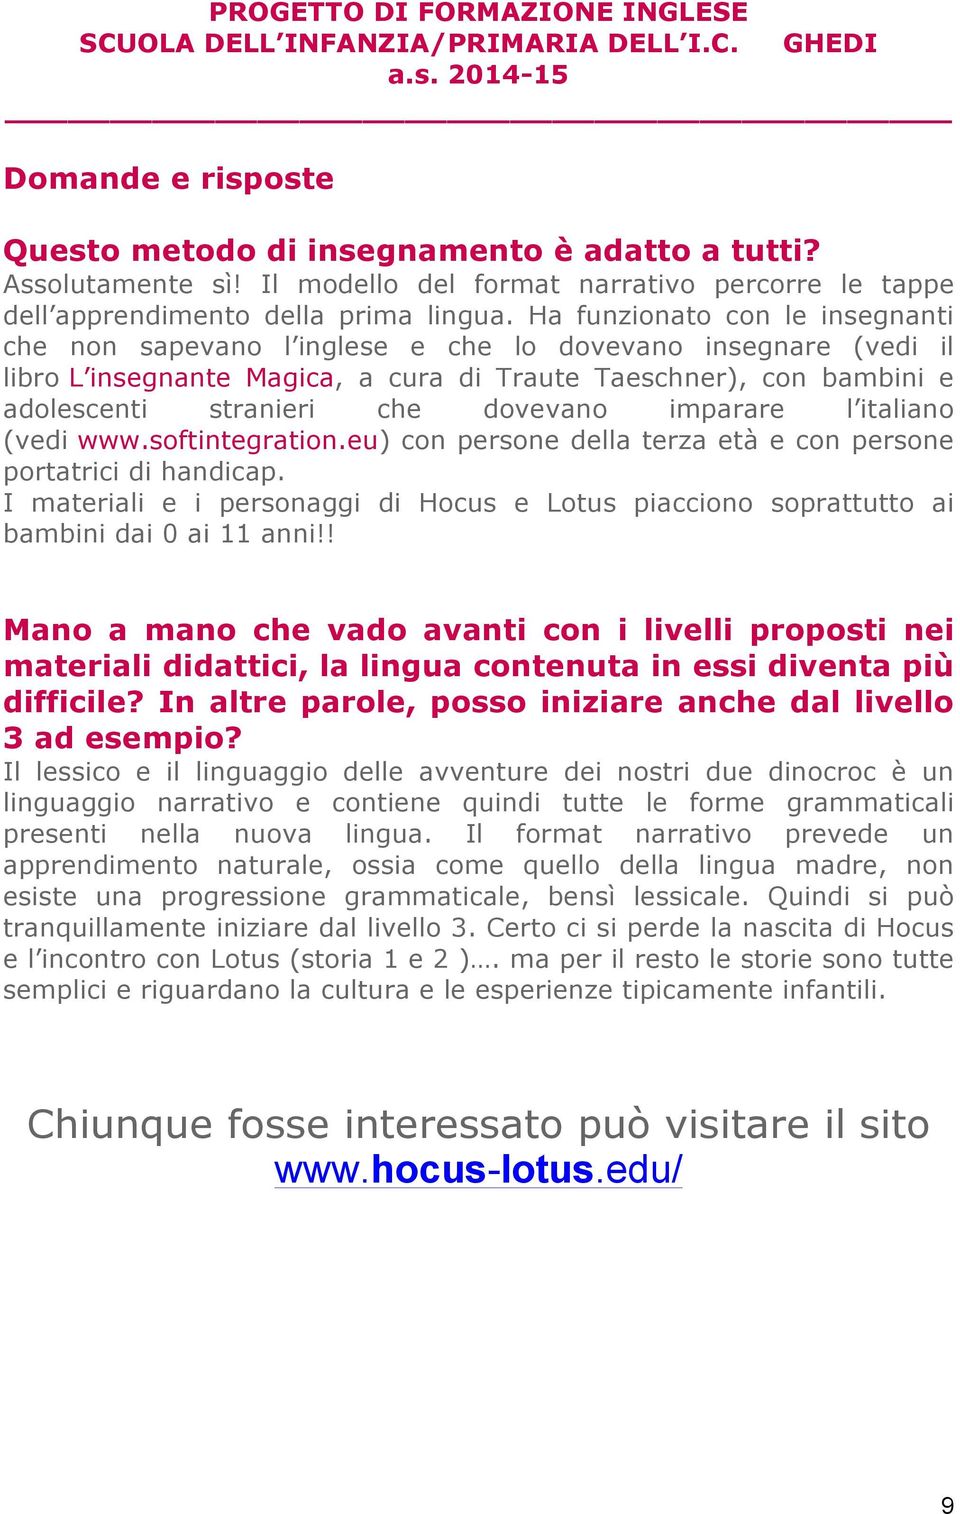 dovevano imparare l italiano (vedi www.softintegration.eu) con persone della terza età e con persone portatrici di handicap.